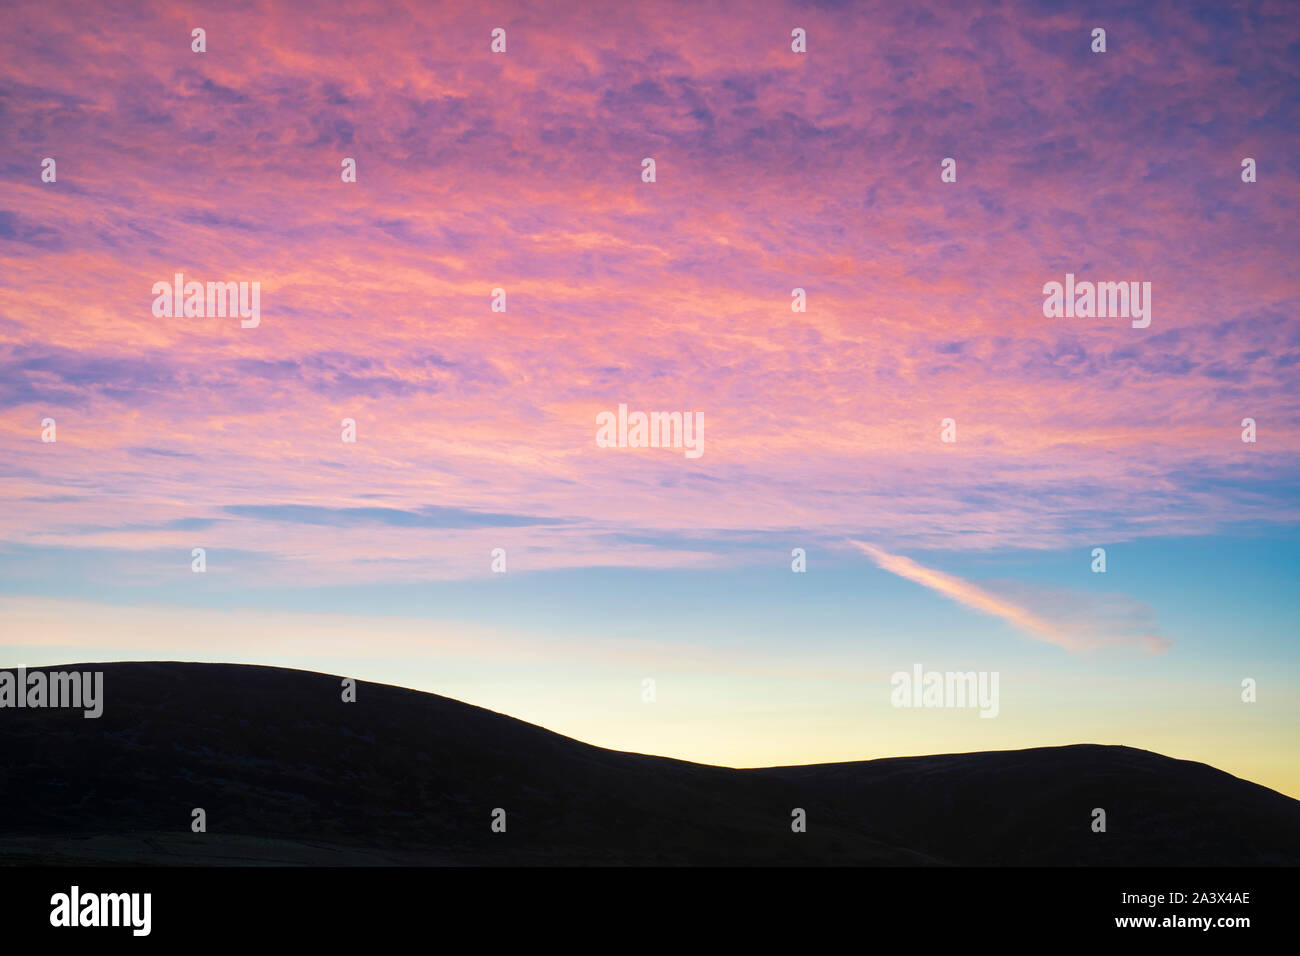 Tôt le matin et ciel rose hill silhouette. Dumfries et Galloway, Scottish Borders, Scotland Banque D'Images